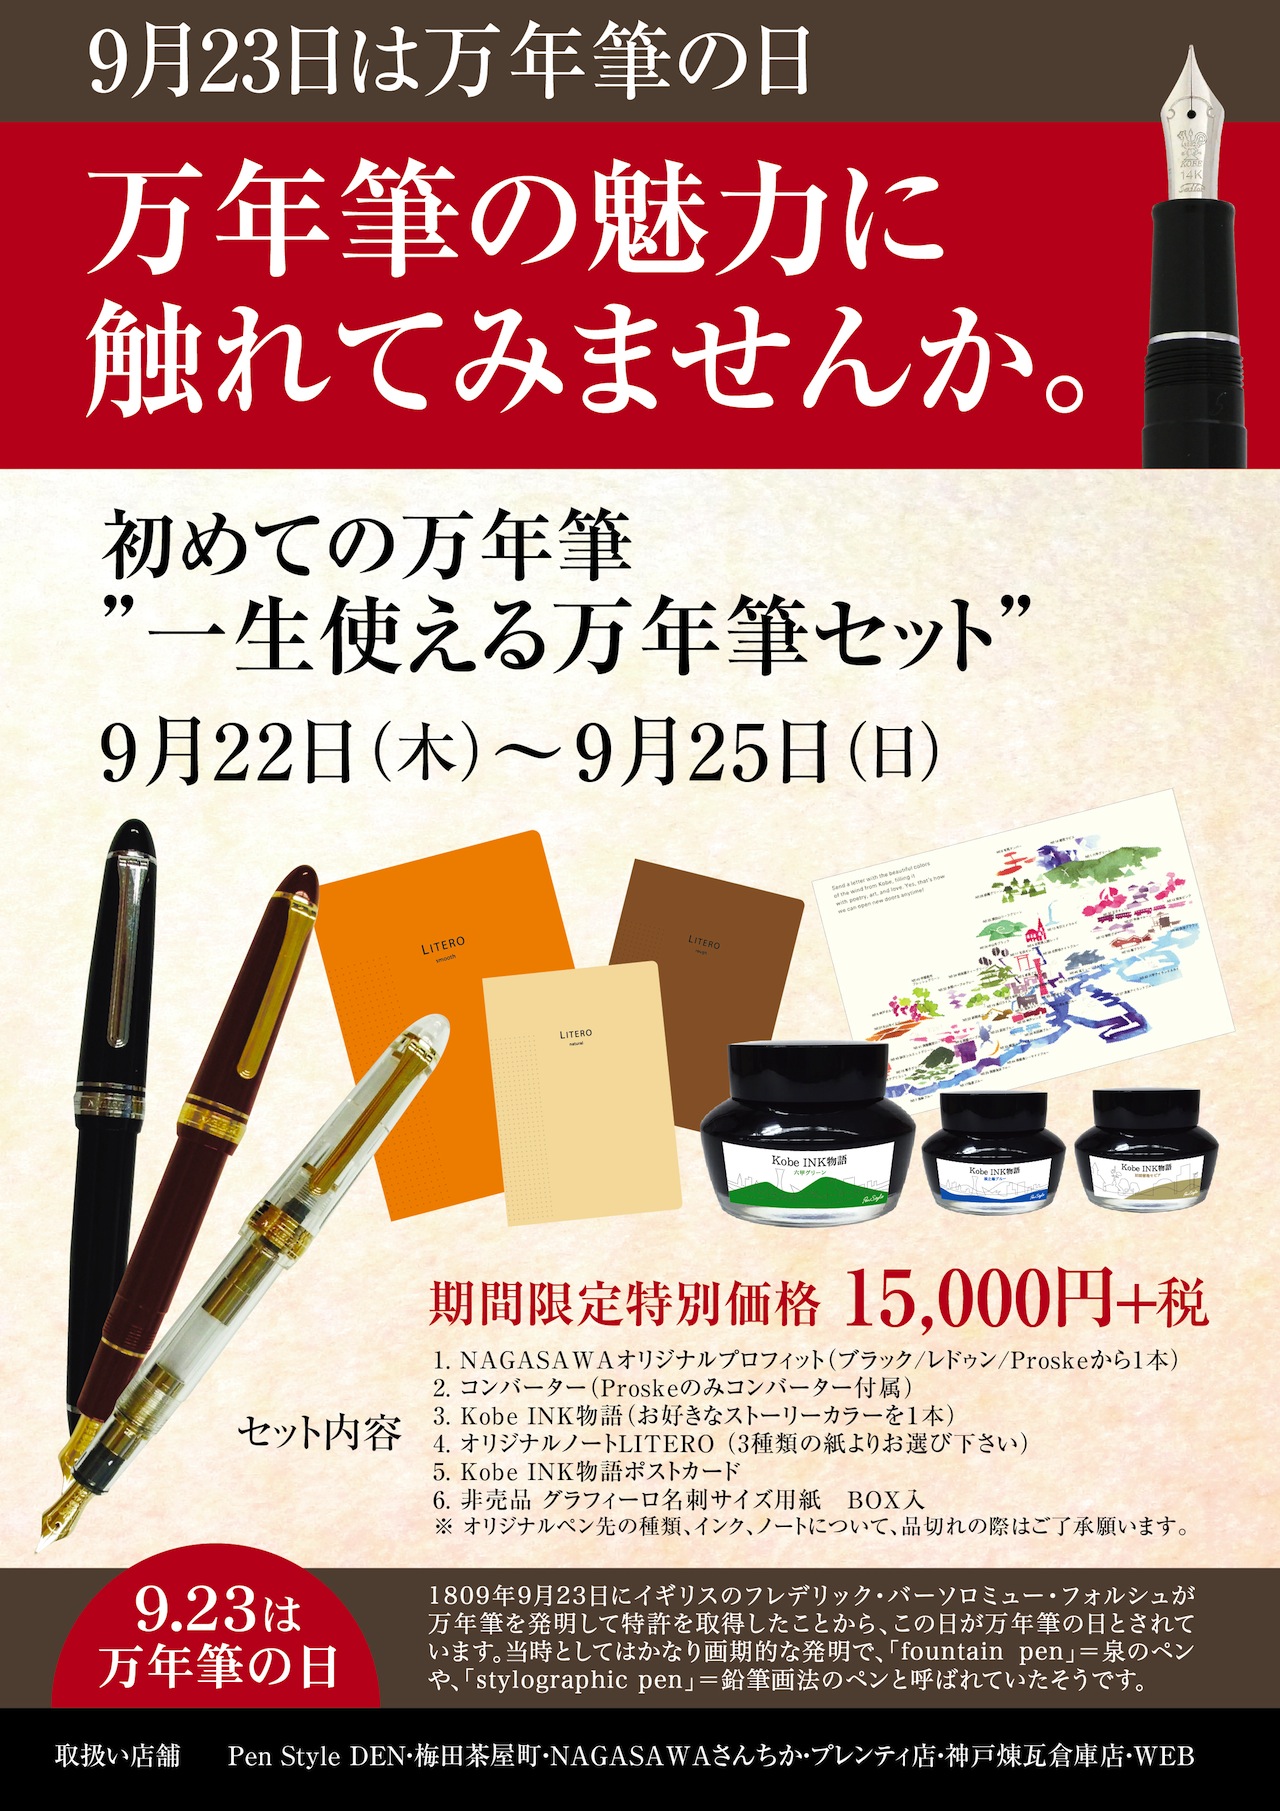 9月23日は万年筆の日！万年筆の魅力に触れてみませんか。